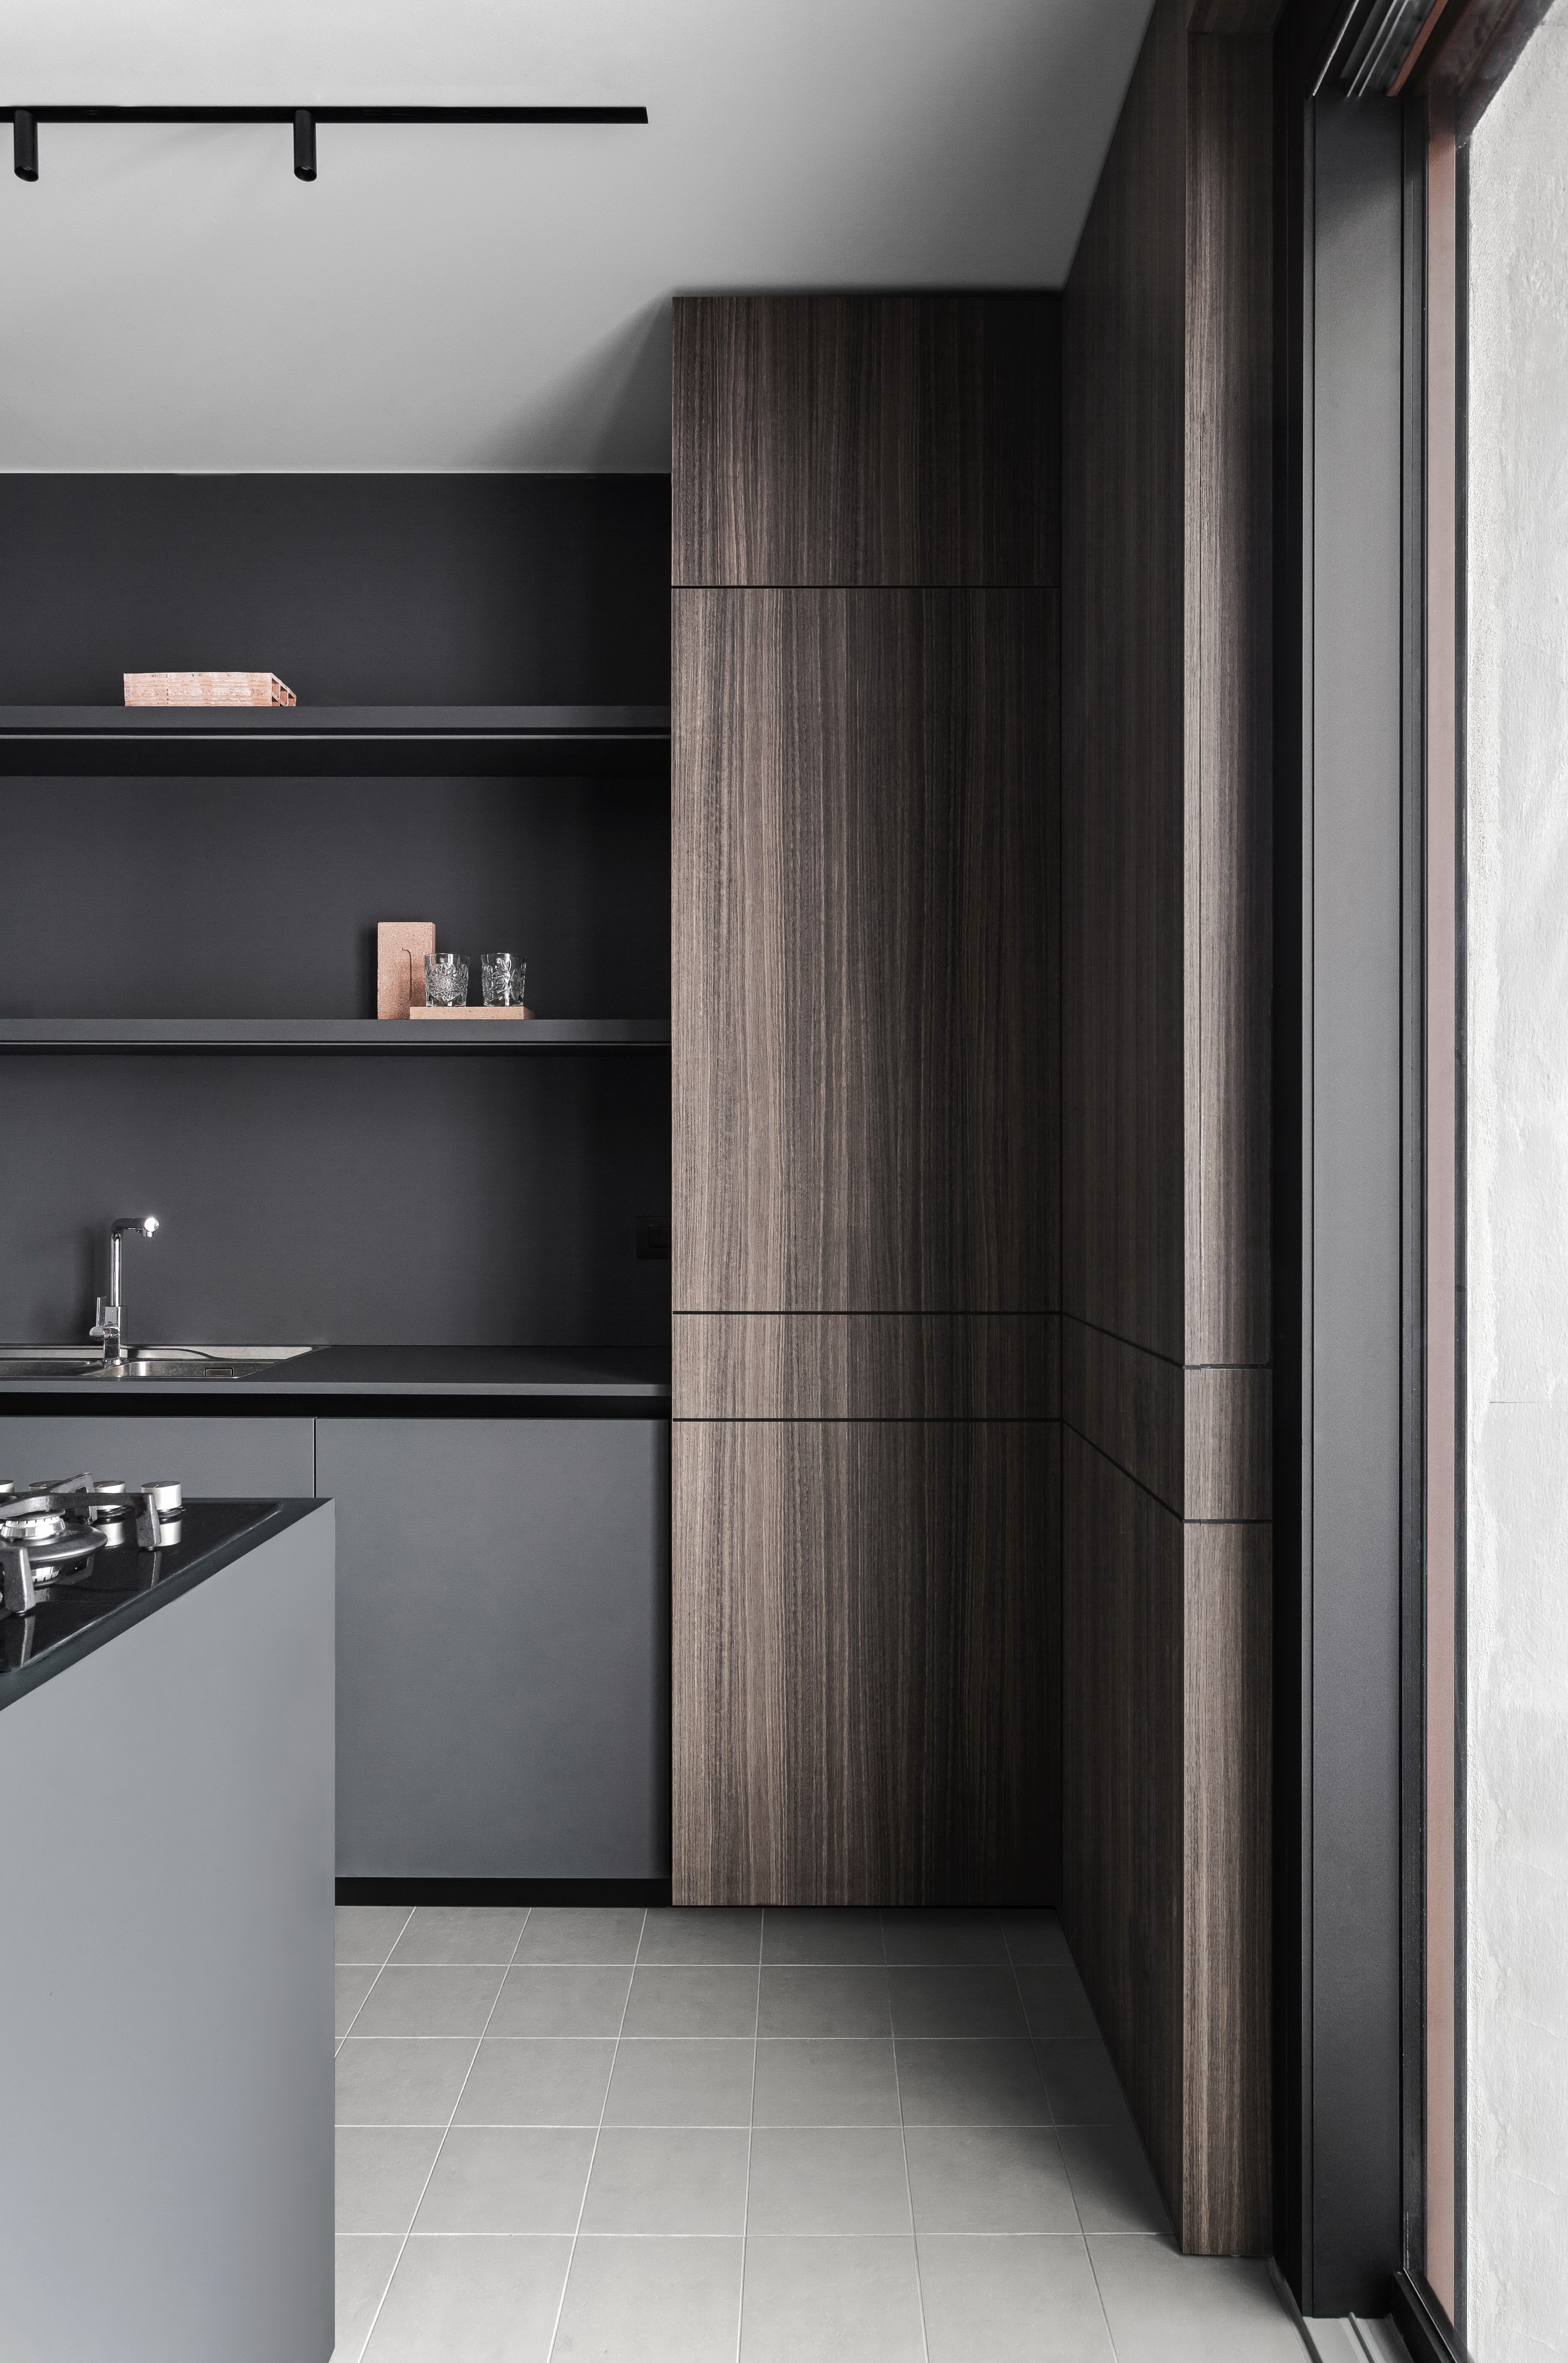 Matte grey kitchen cabinet